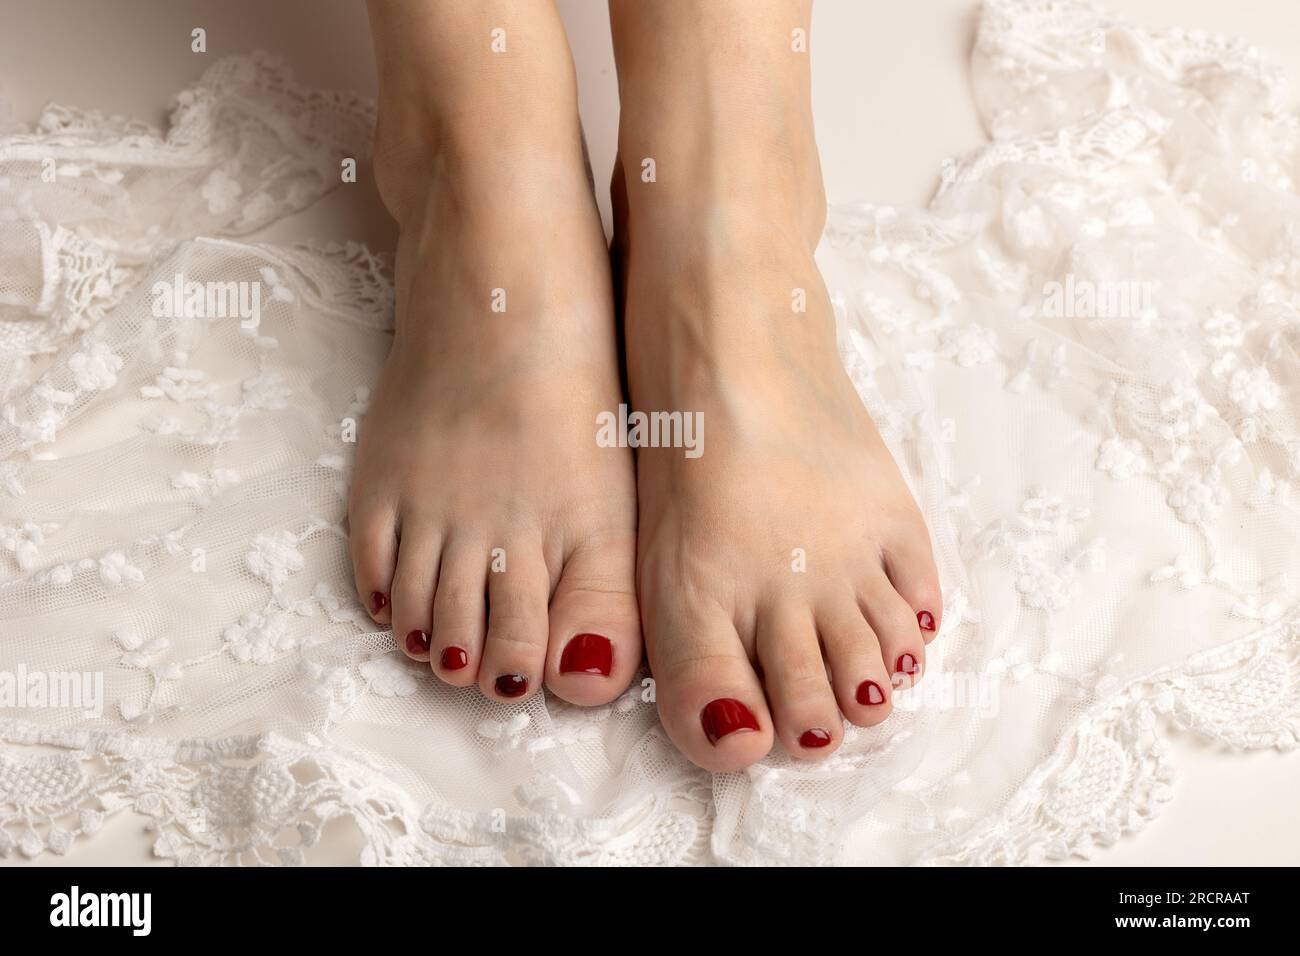 Gros plan de pieds féminins souples avec une belle pédicure rouge sur dentelle blanche Banque D'Images